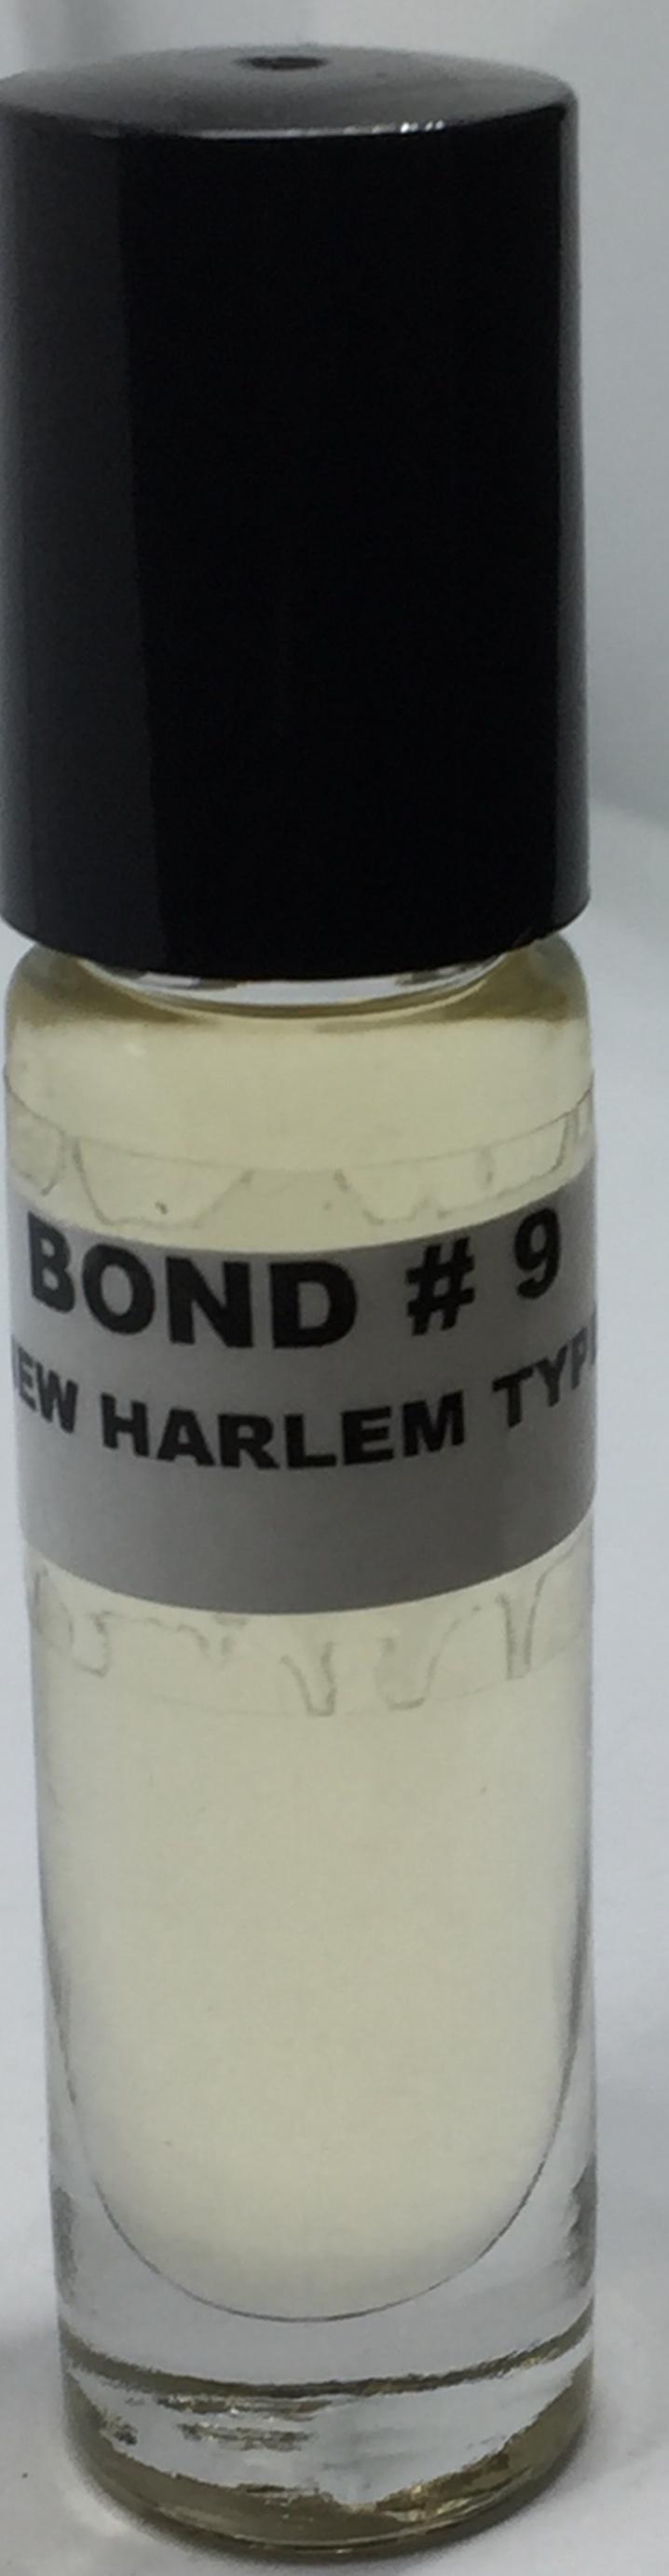 Bond#9 New Harlem Type: Fragrance(Perfume) Body Oil Men